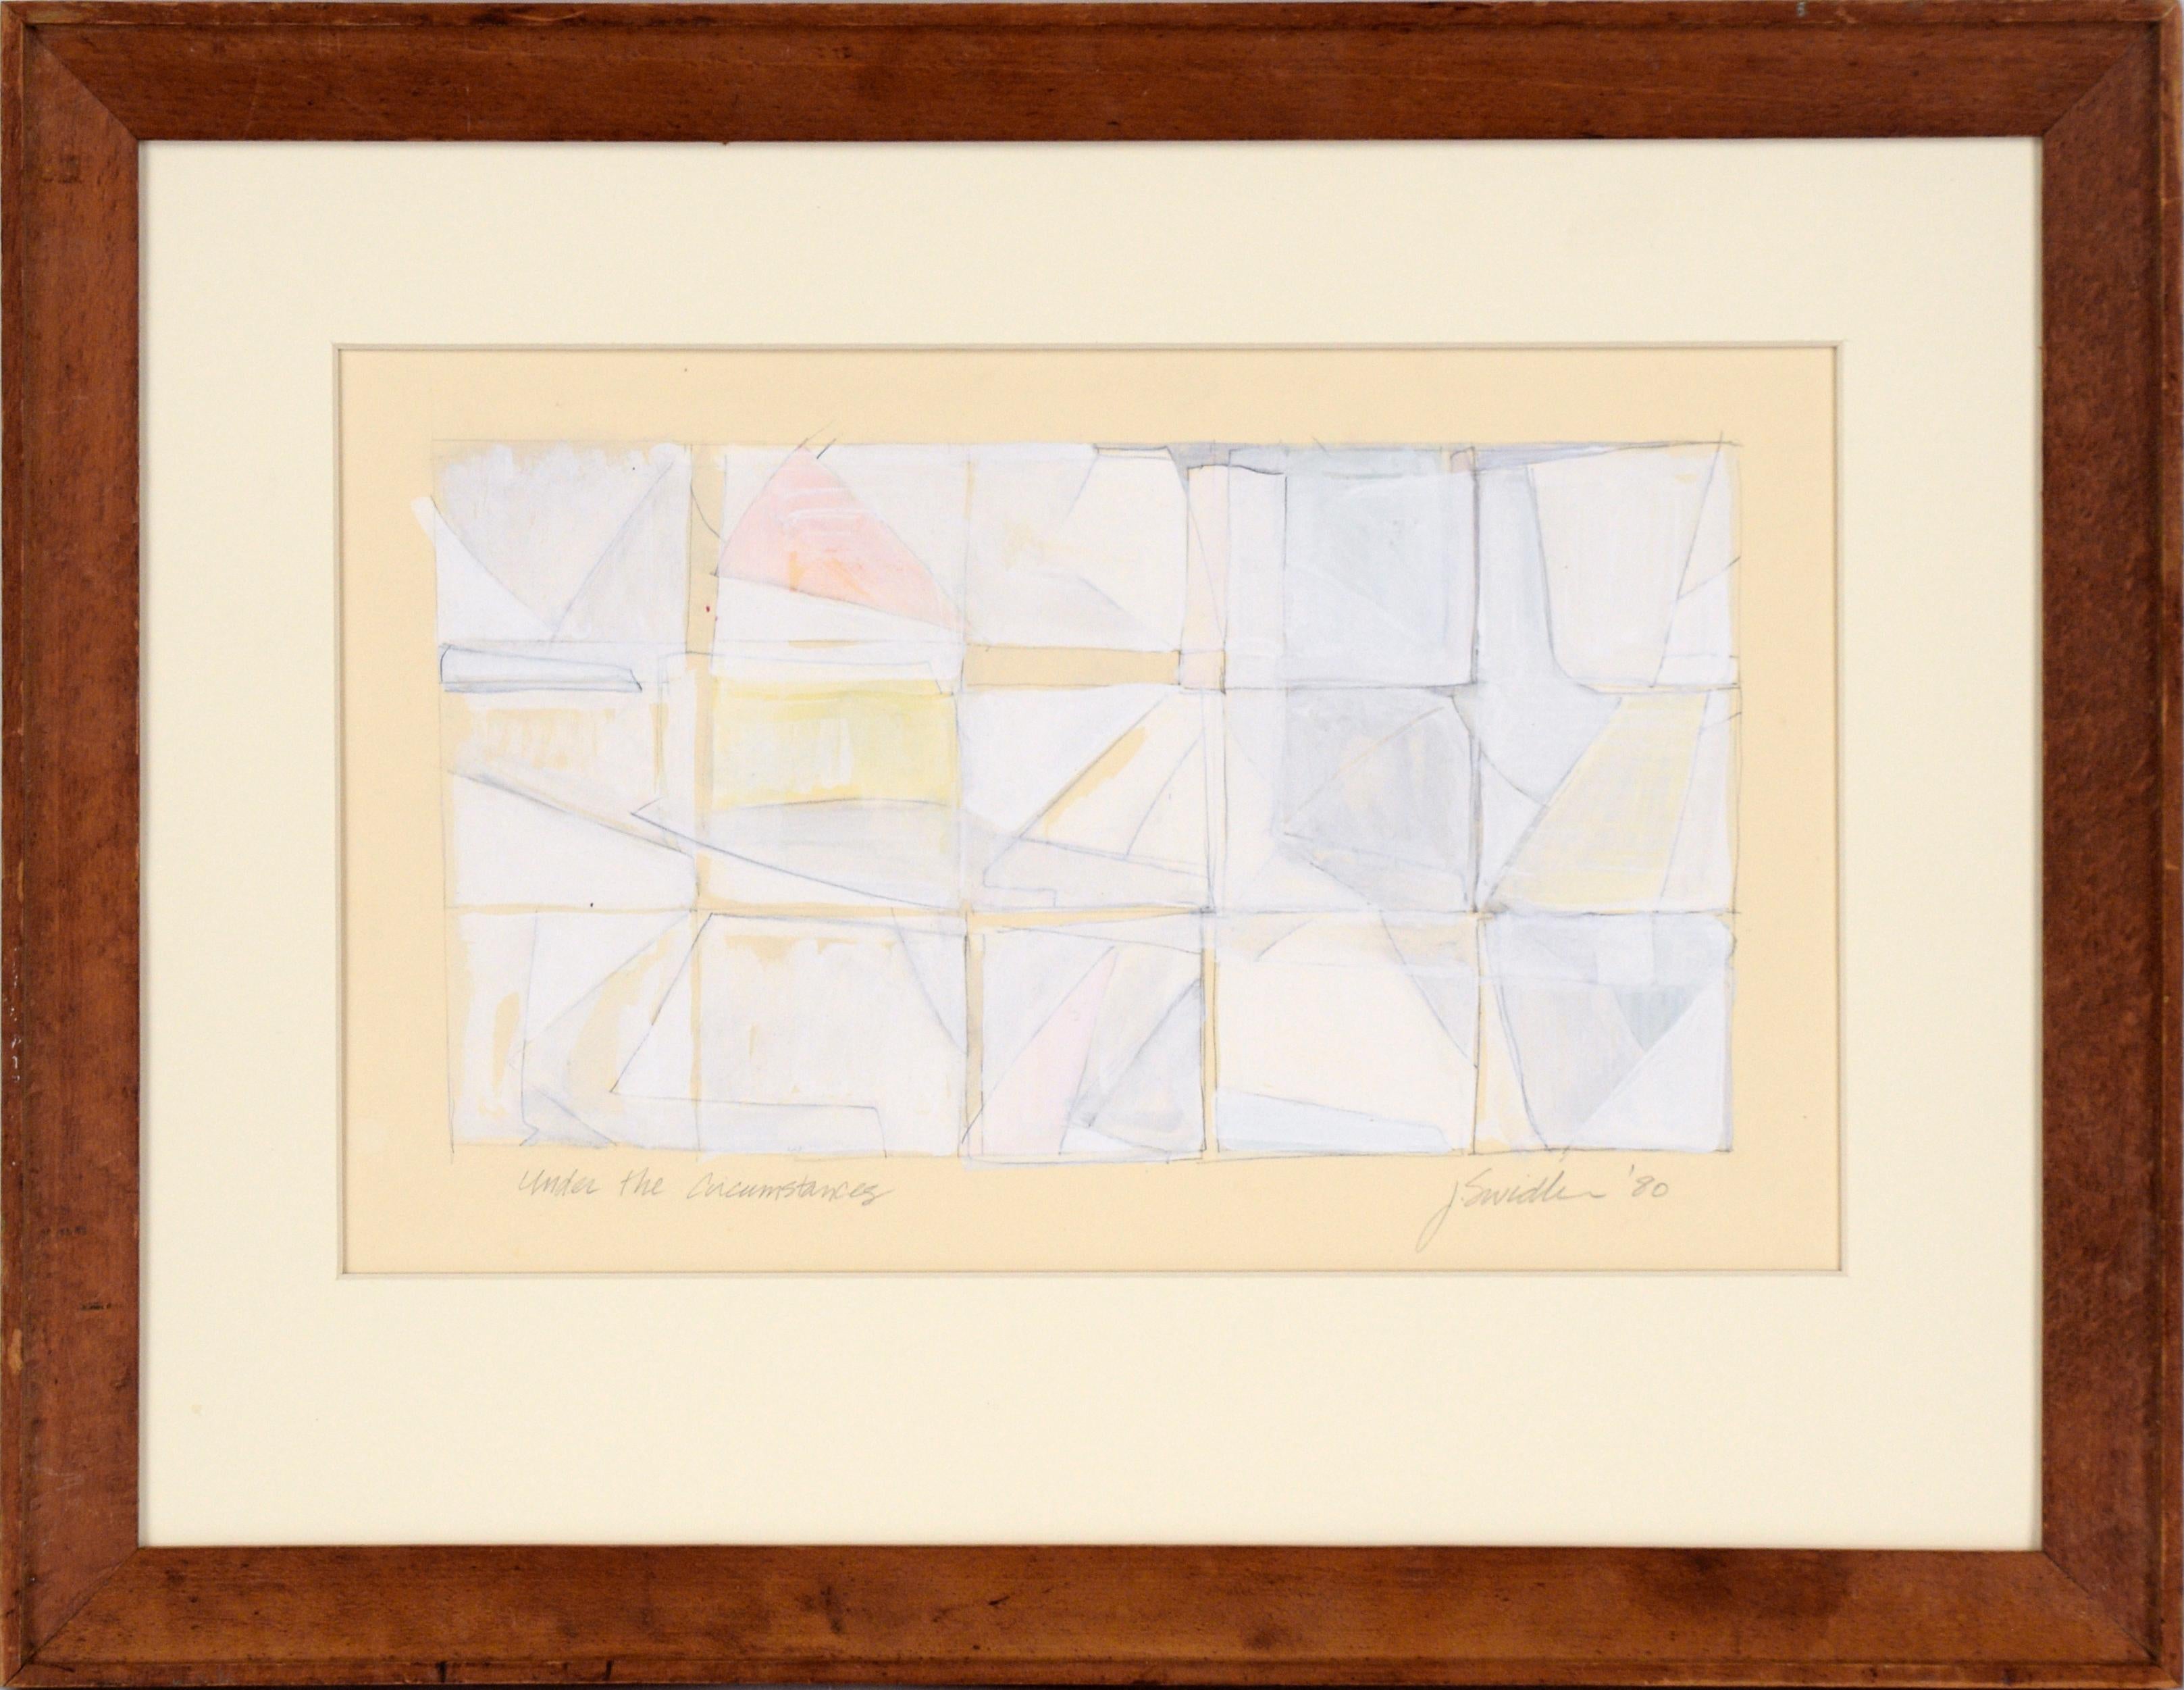 J. Swidler Abstract Painting – ""Under the Circumstances" - Abstrakte geometrische Komposition in Gouache auf Papier